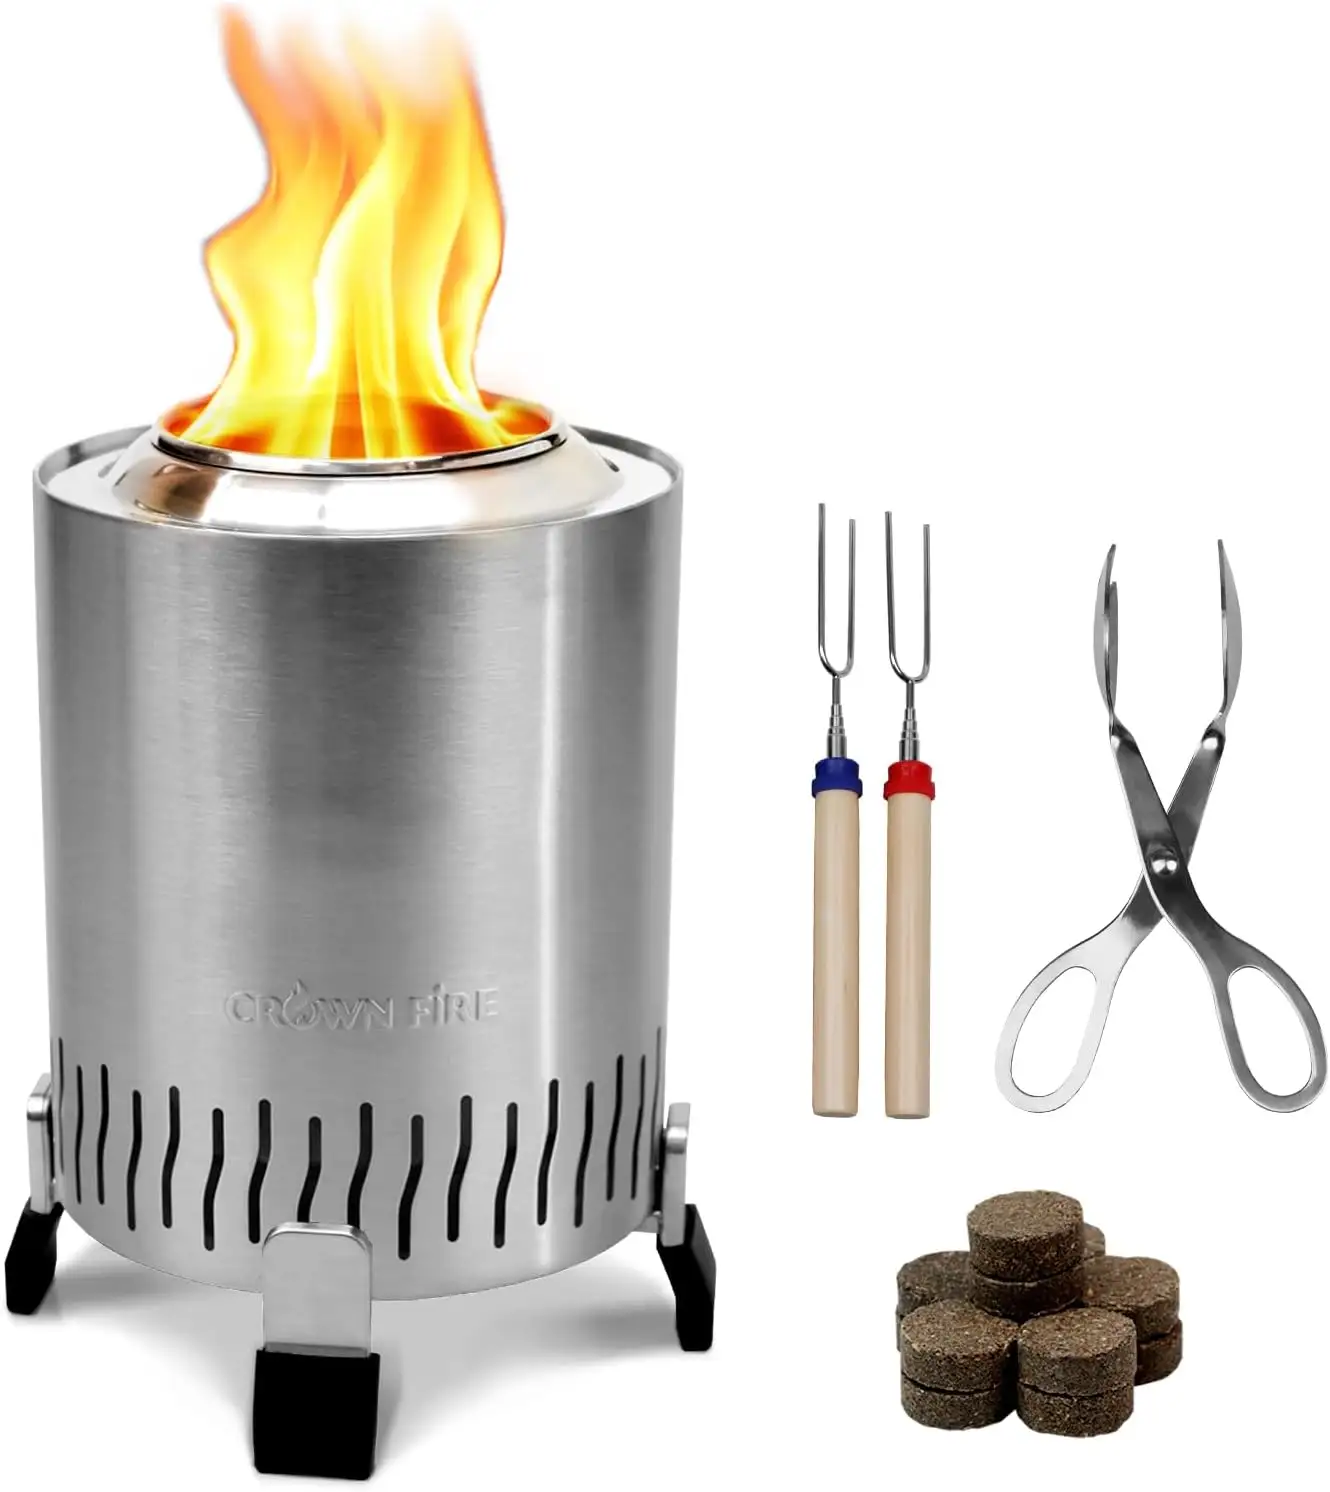 Venda quente fogão a lenha mini fogão fogueira fogueira fogueira fogueira fogo de aço inoxidável lareira de madeira portátil sem fumaça fogueira